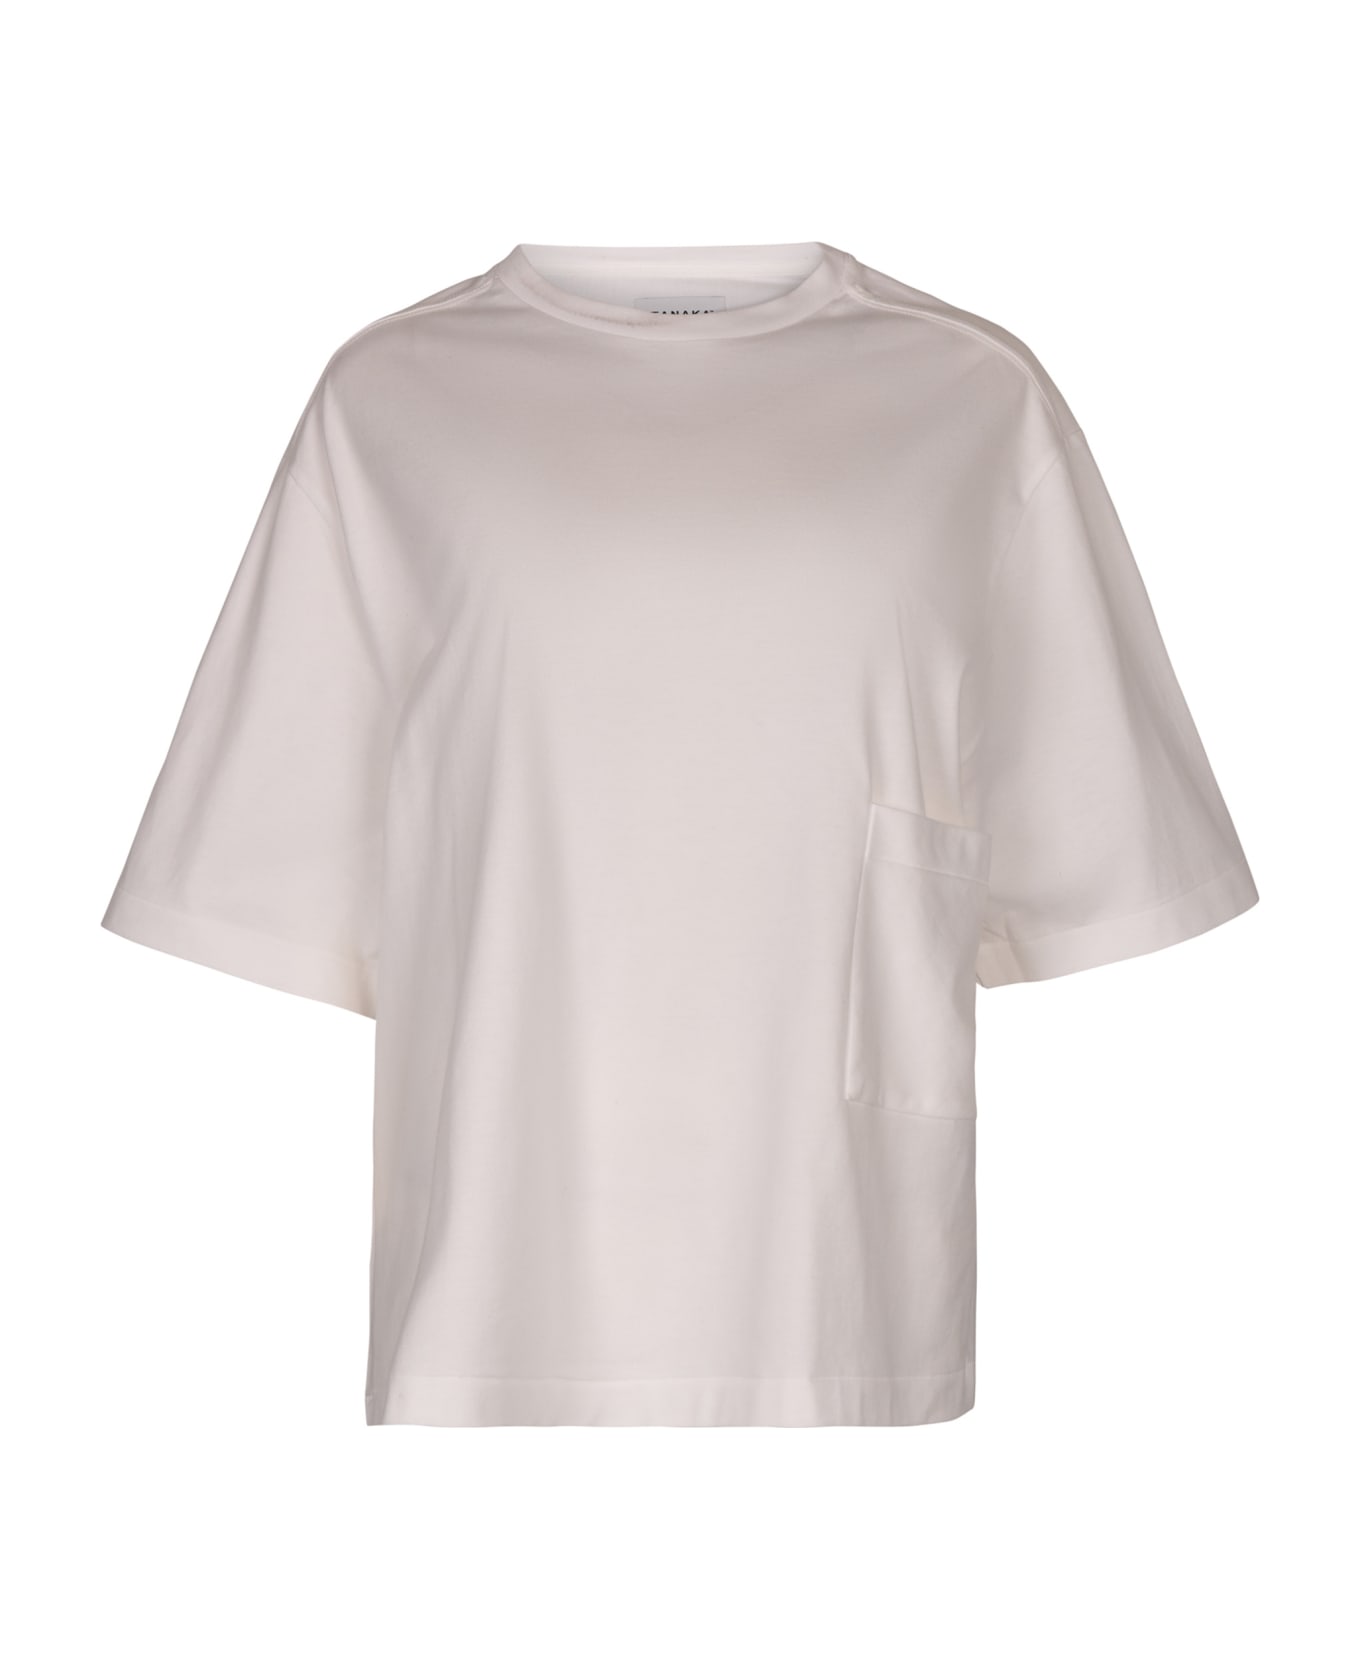 Tanaka The T-shirt - White